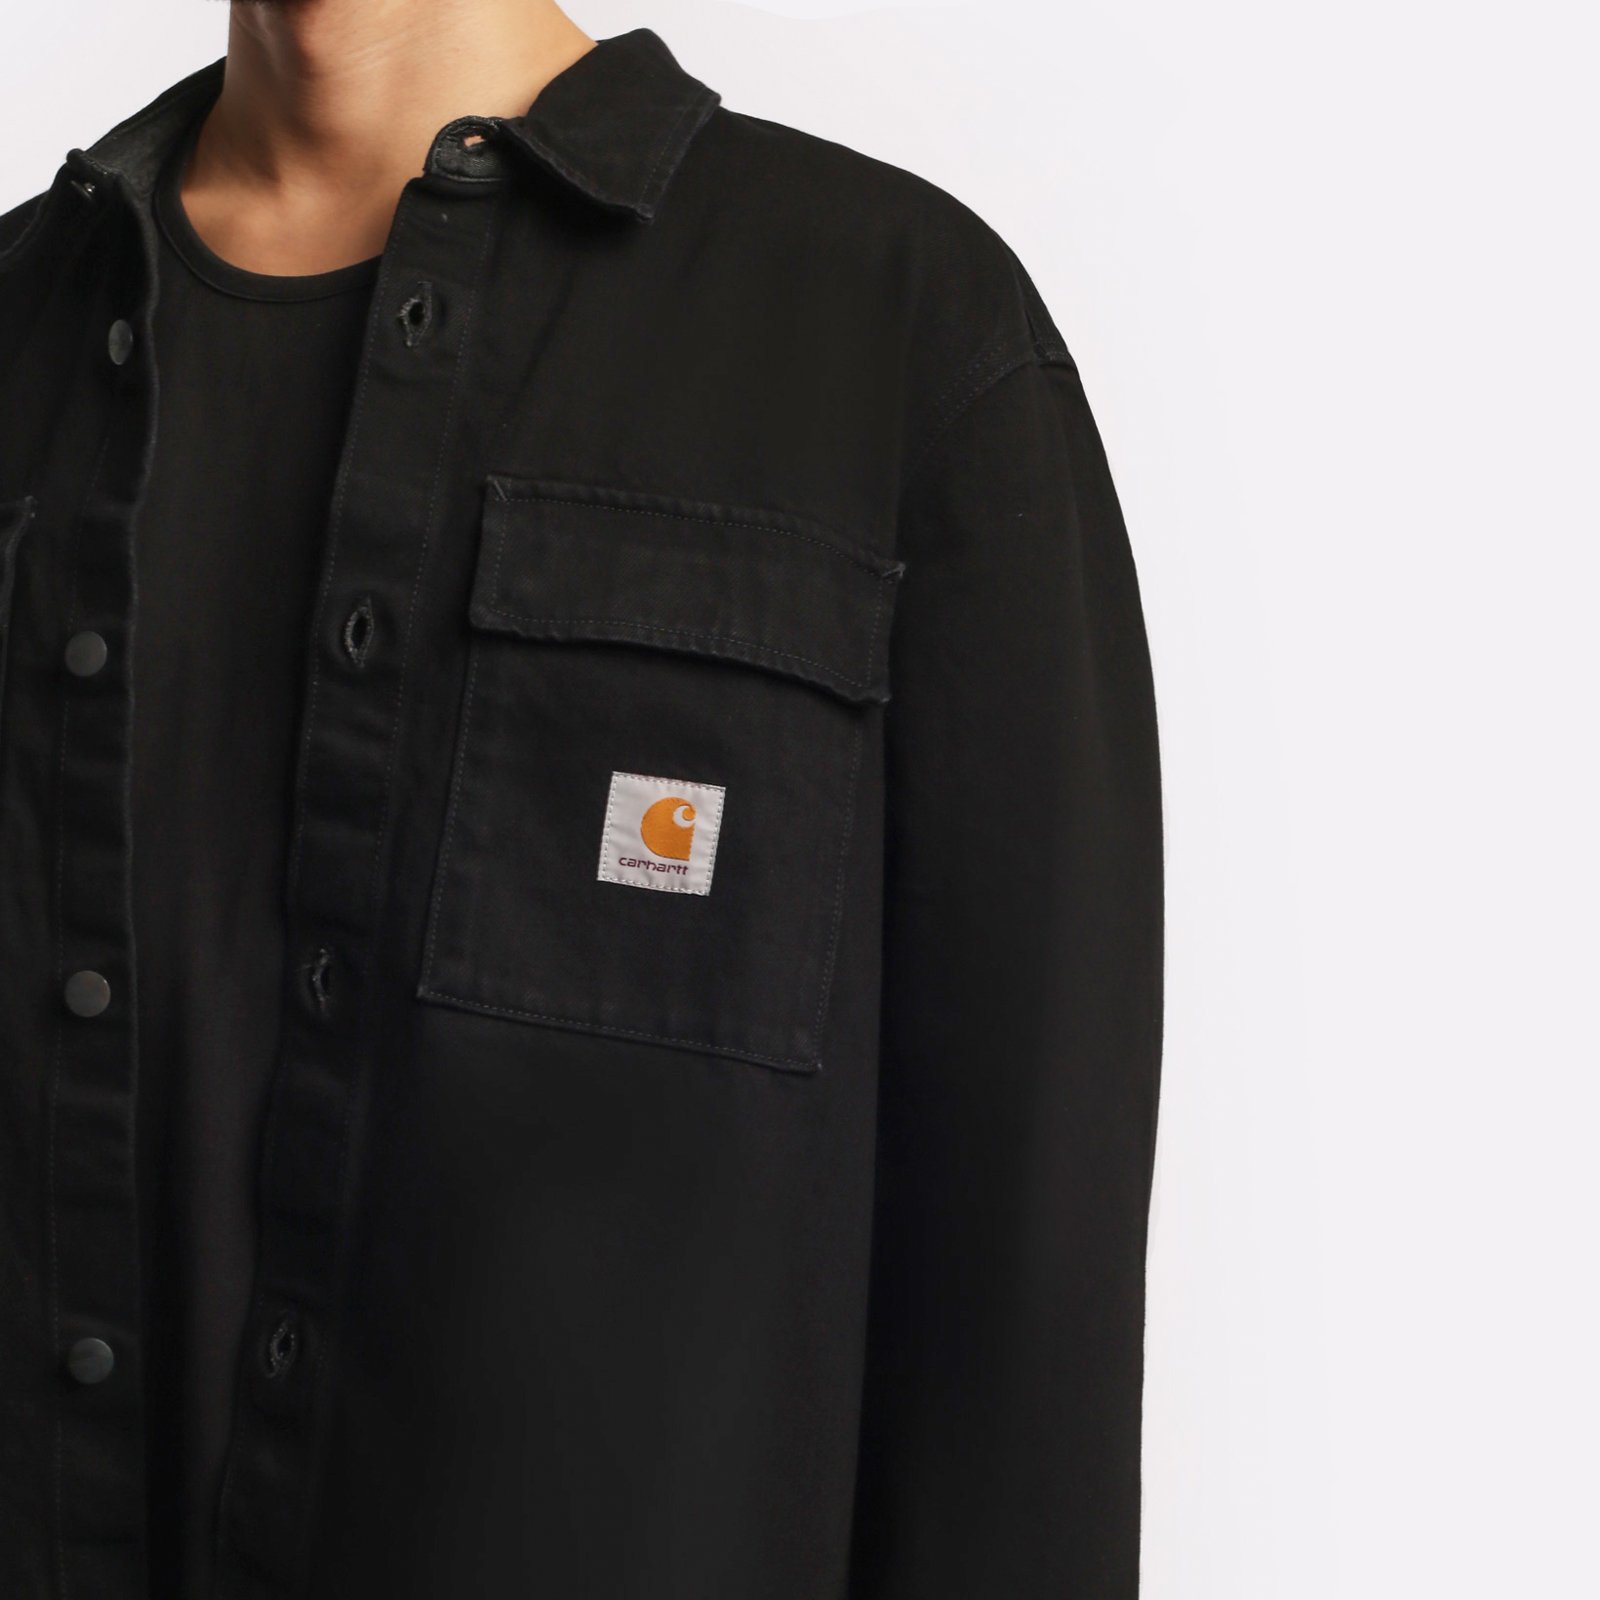 мужская черная куртка Carhartt WIP Manny Shirt Jac I032705-black - цена, описание, фото 4